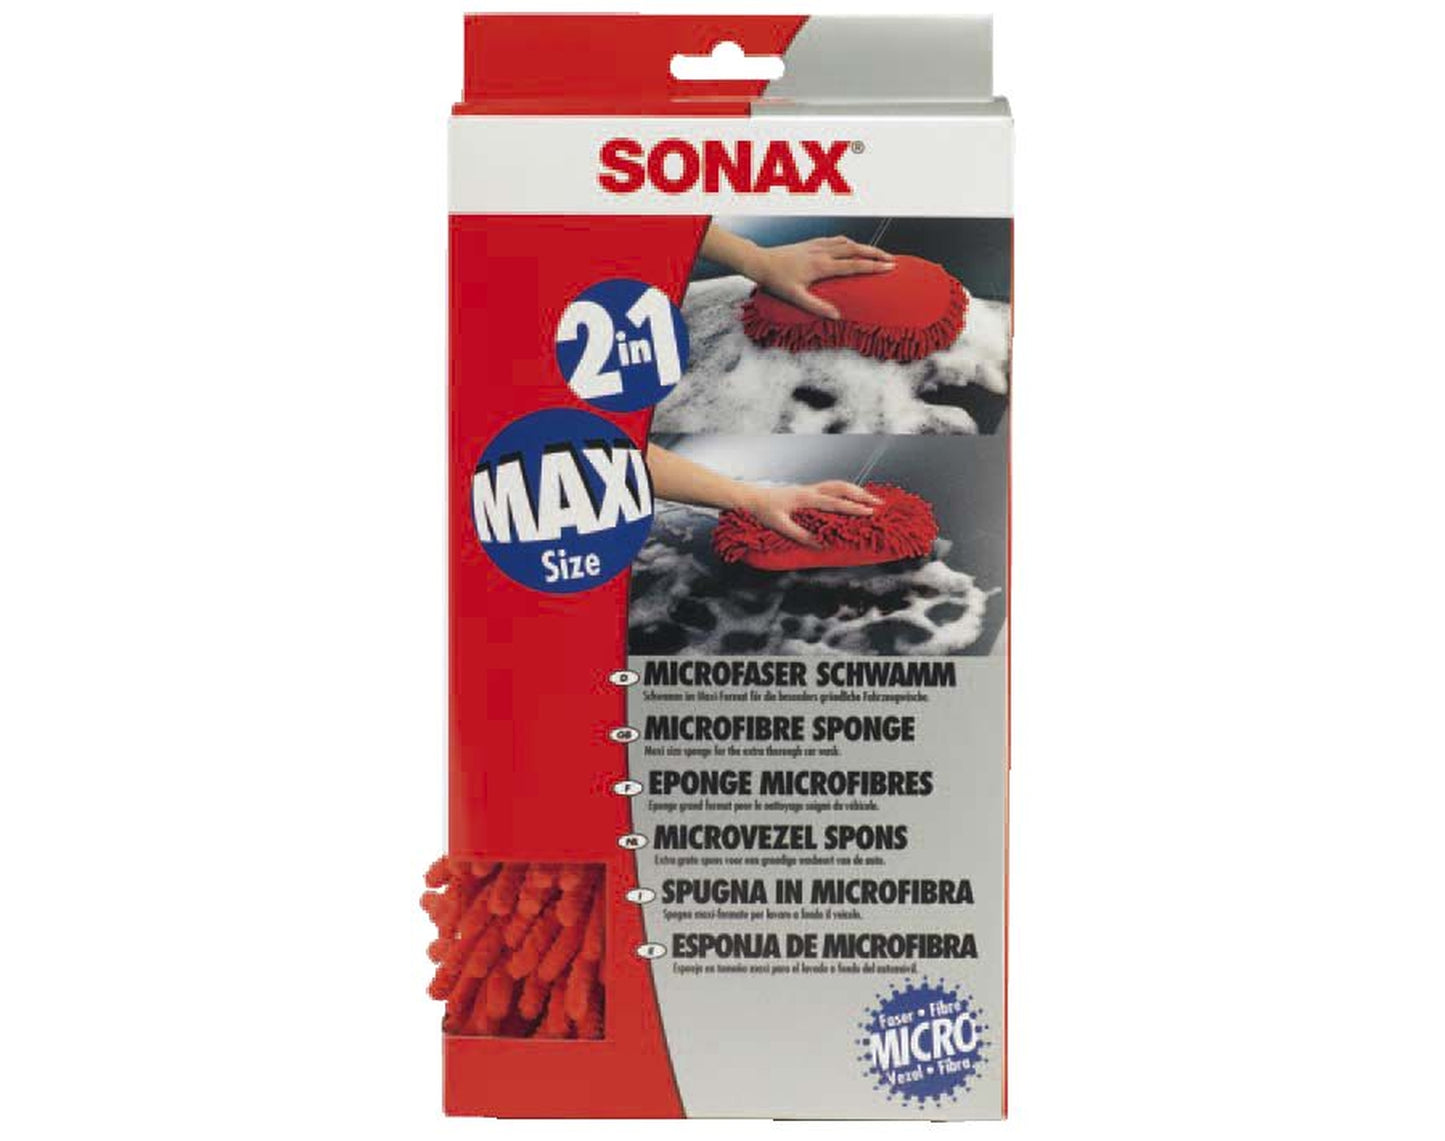 Sonax Microfaser Schwamm 2in1